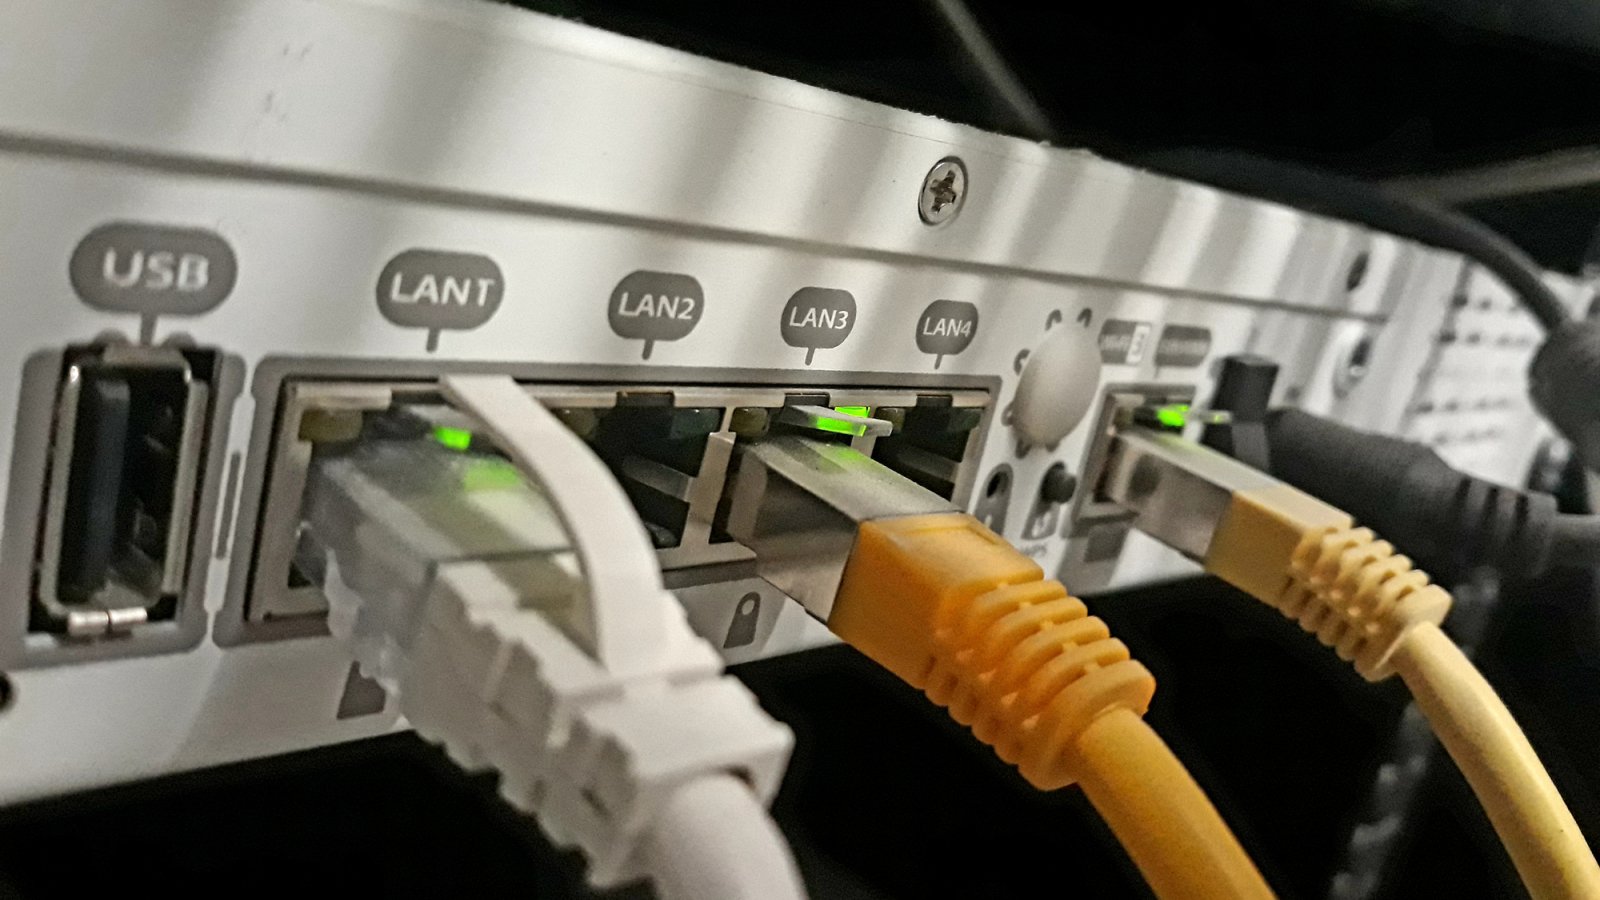 Stellen Sie sicher, dass das Kabel zwischen Ihrem Comcast-Modem und Ihrem Computer ordnungsgemäß angeschlossen ist.
Überprüfen Sie, ob das Ethernet-Kabel nicht beschädigt ist und richtig in die Ethernet-Buchse des Modems eingesteckt ist.